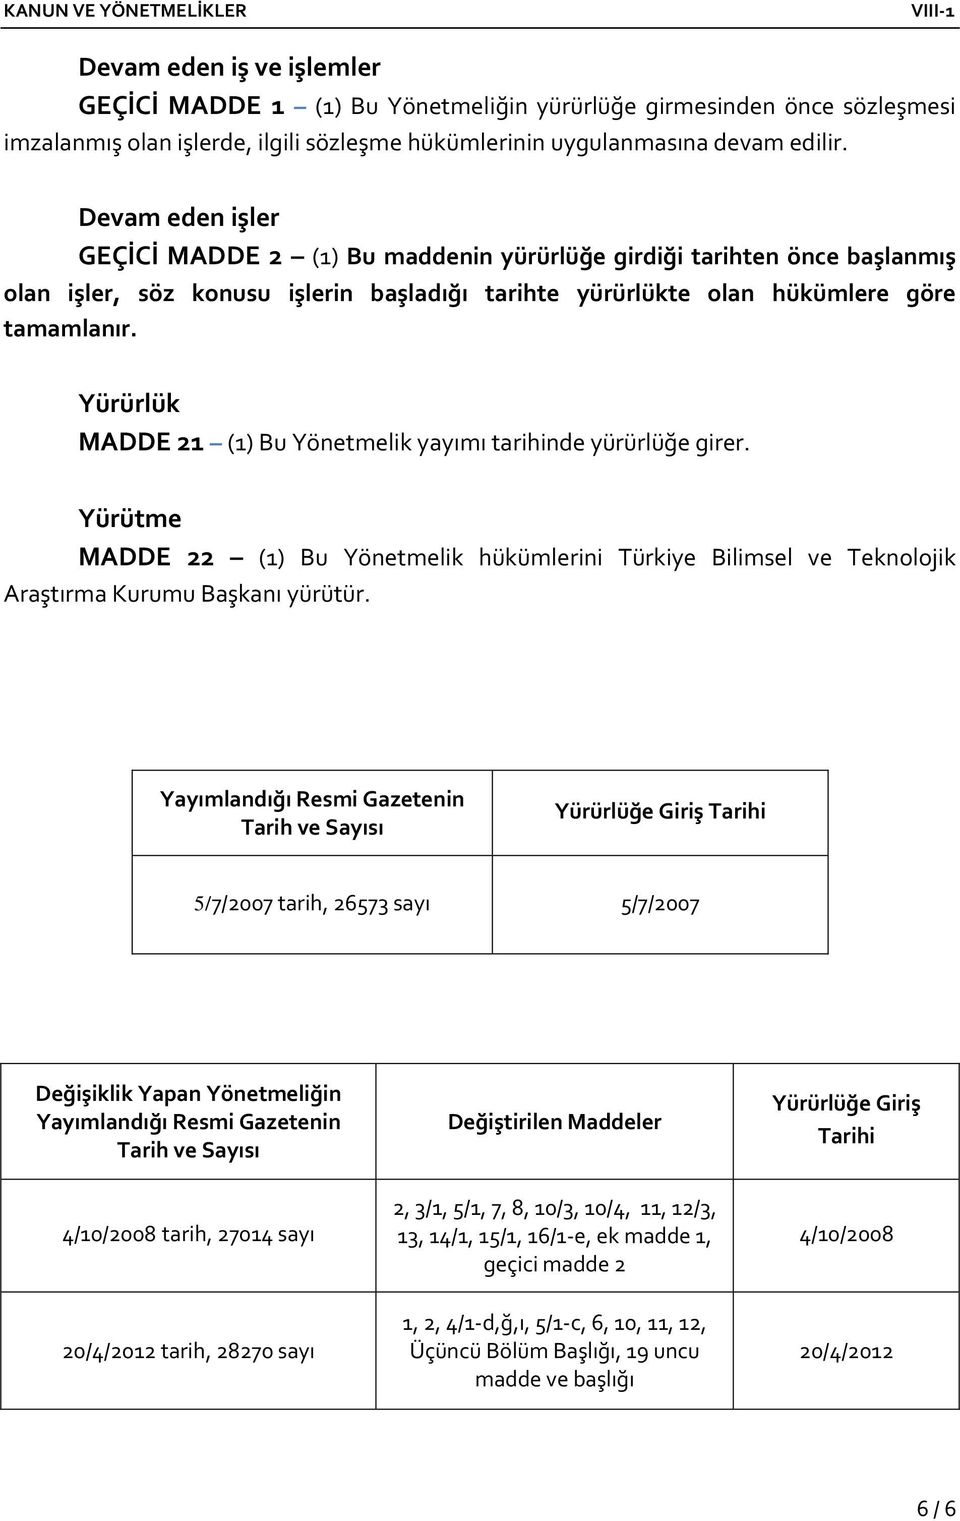 Yürürlük MADDE 21 (1) Bu Yönetmelik yayımı tarihinde yürürlüğe girer. Yürütme MADDE 22 (1) Bu Yönetmelik hükümlerini Türkiye Bilimsel ve Teknolojik Araştırma Kurumu Başkanı yürütür.